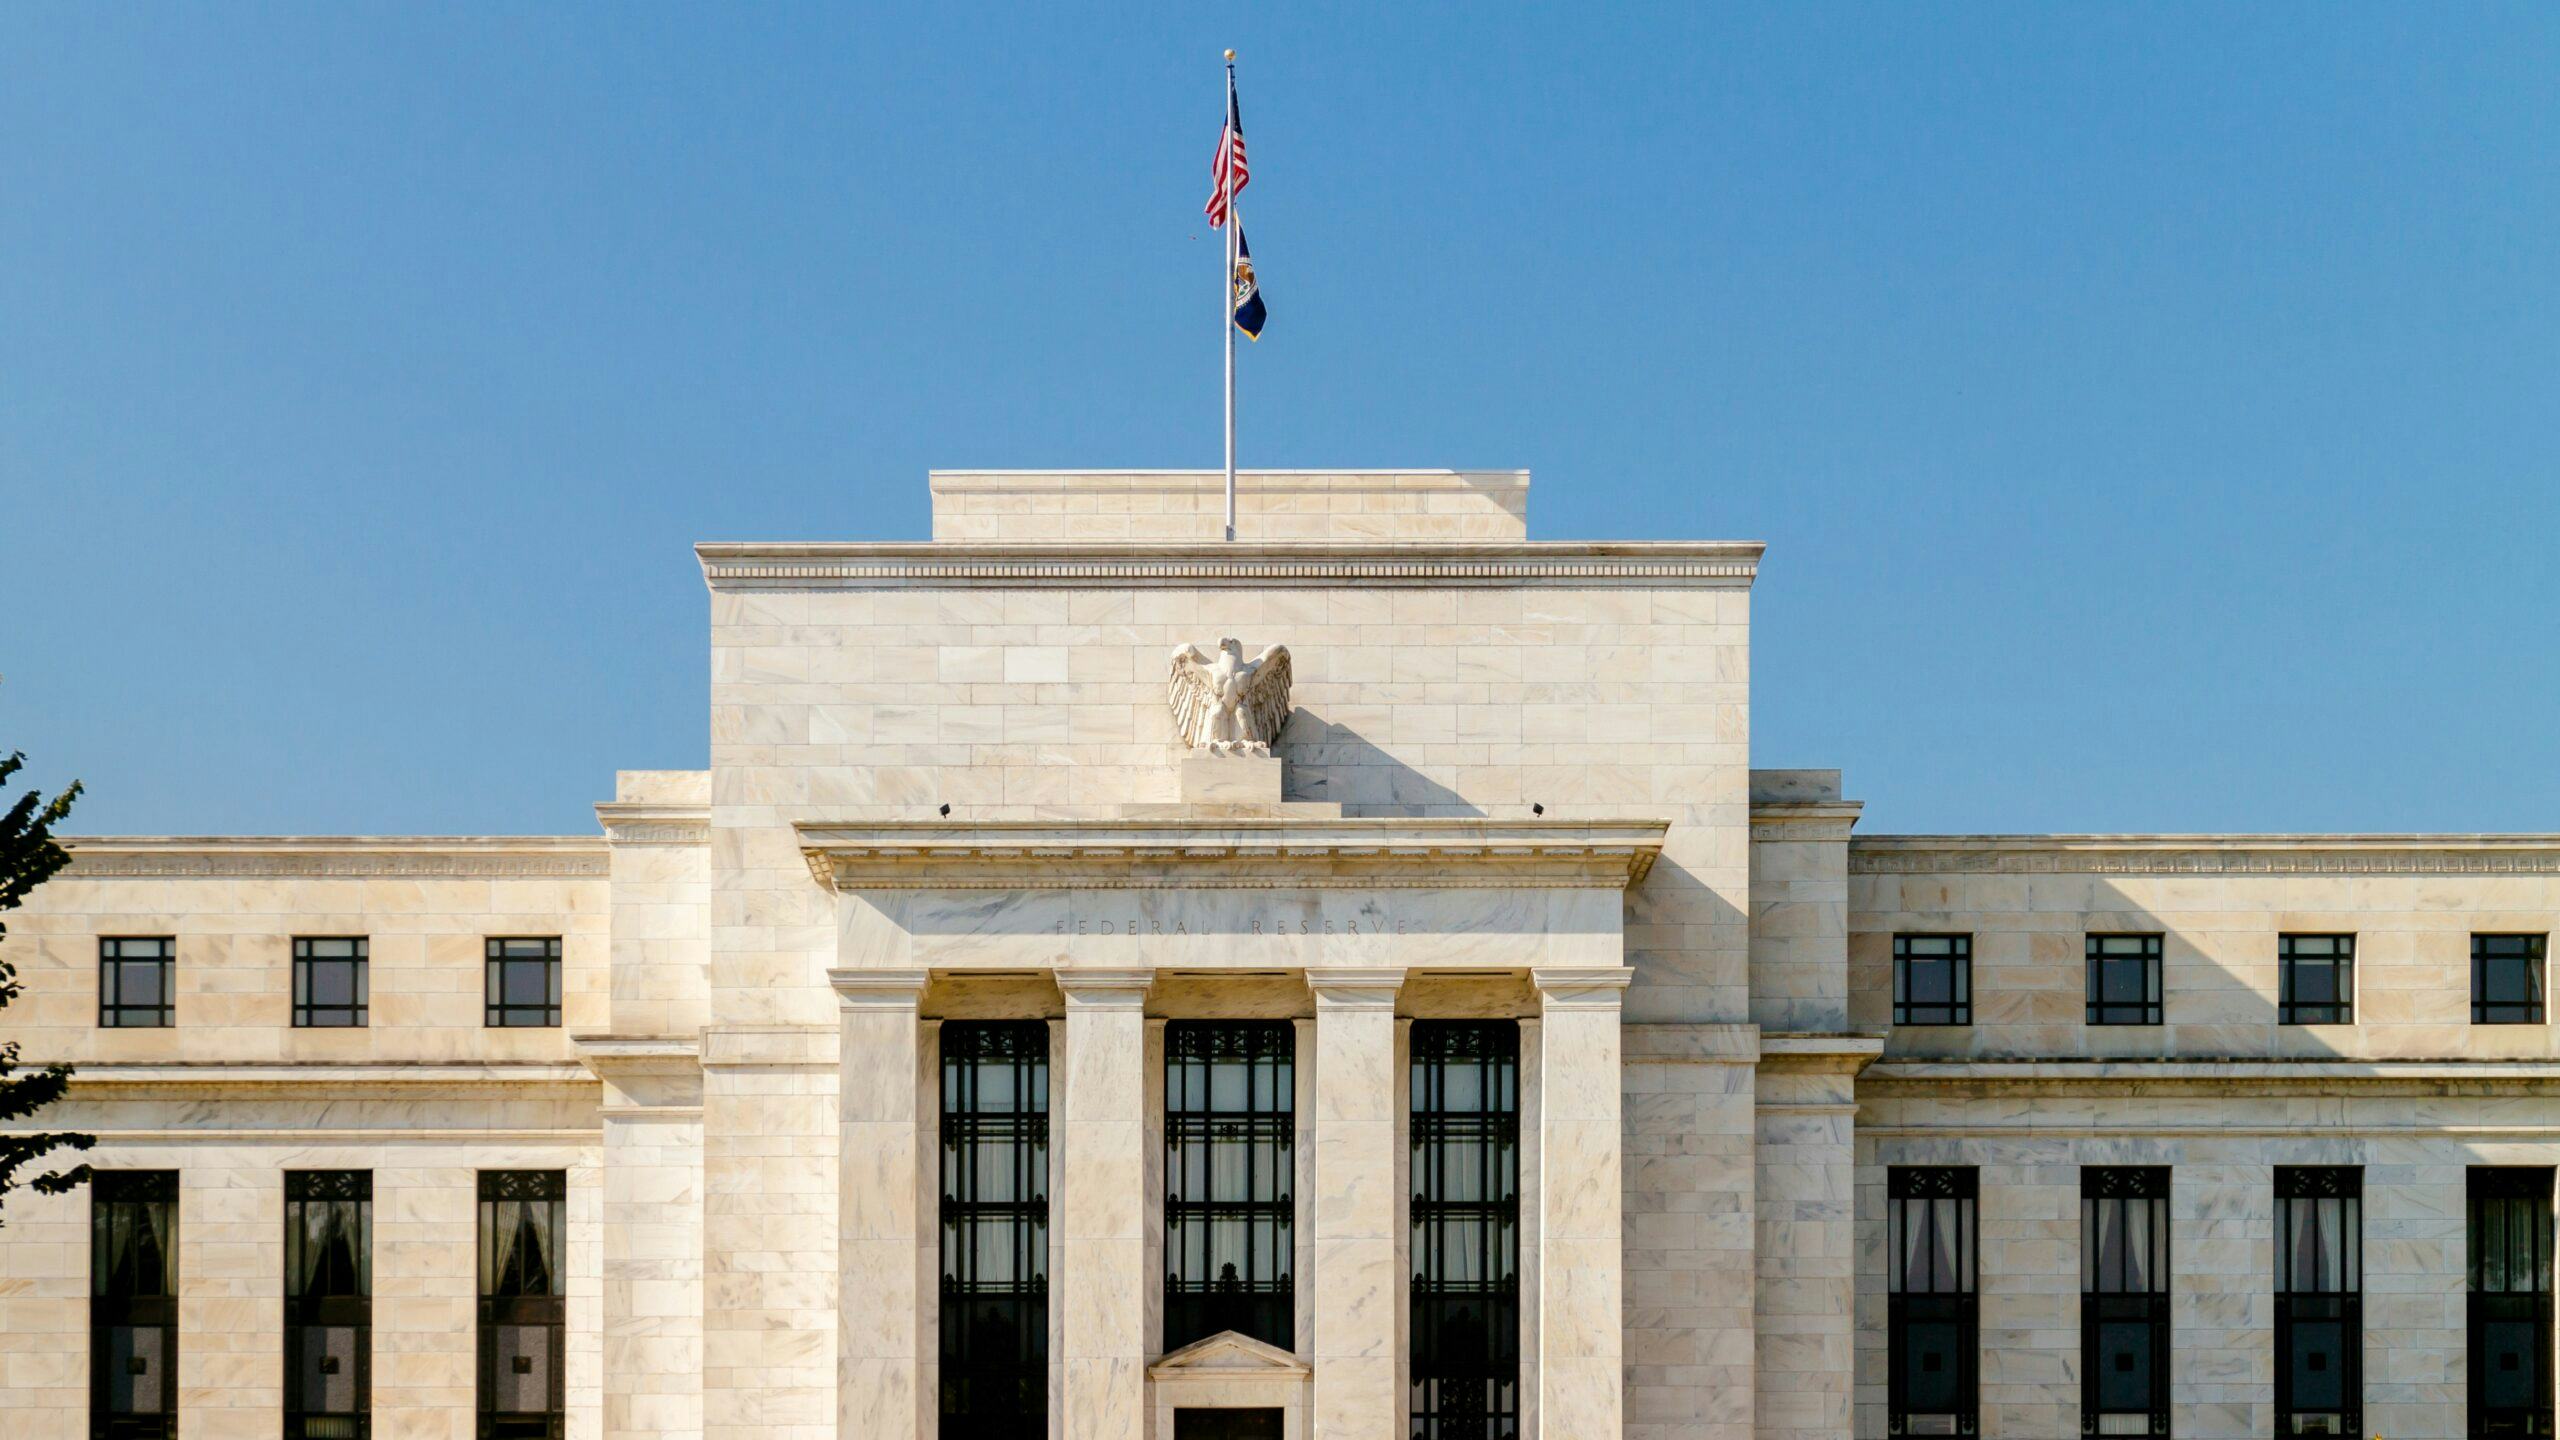 Beurzen in het rood na aankondiging renteverhogingen Fed